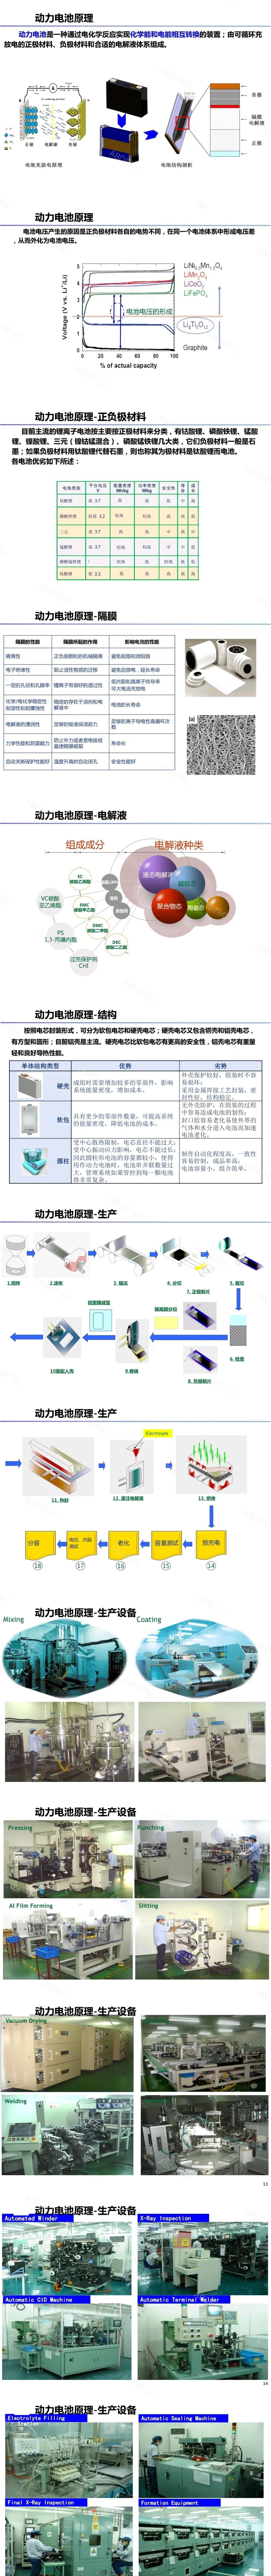 【干货】电池原理与生产制造w1.jpg